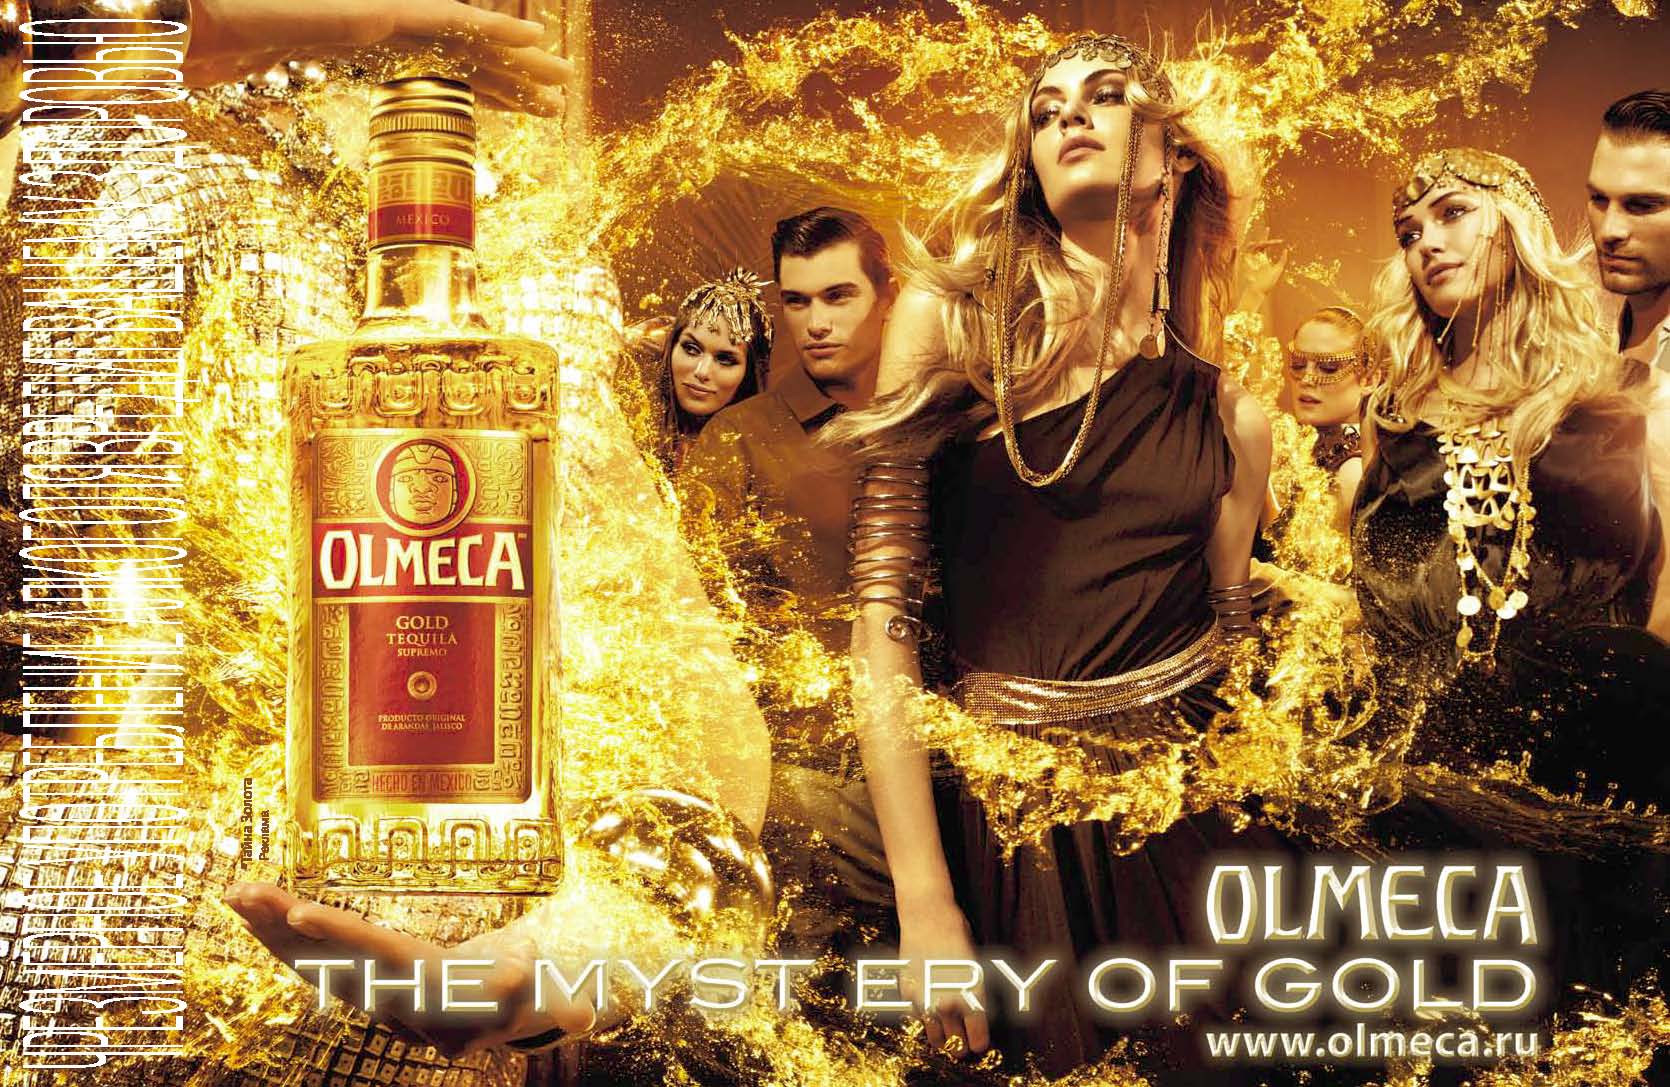 Текила поет. Golden Tequila Olmeca. Текила Ольмека Голд. Olmeca текила Золотая.